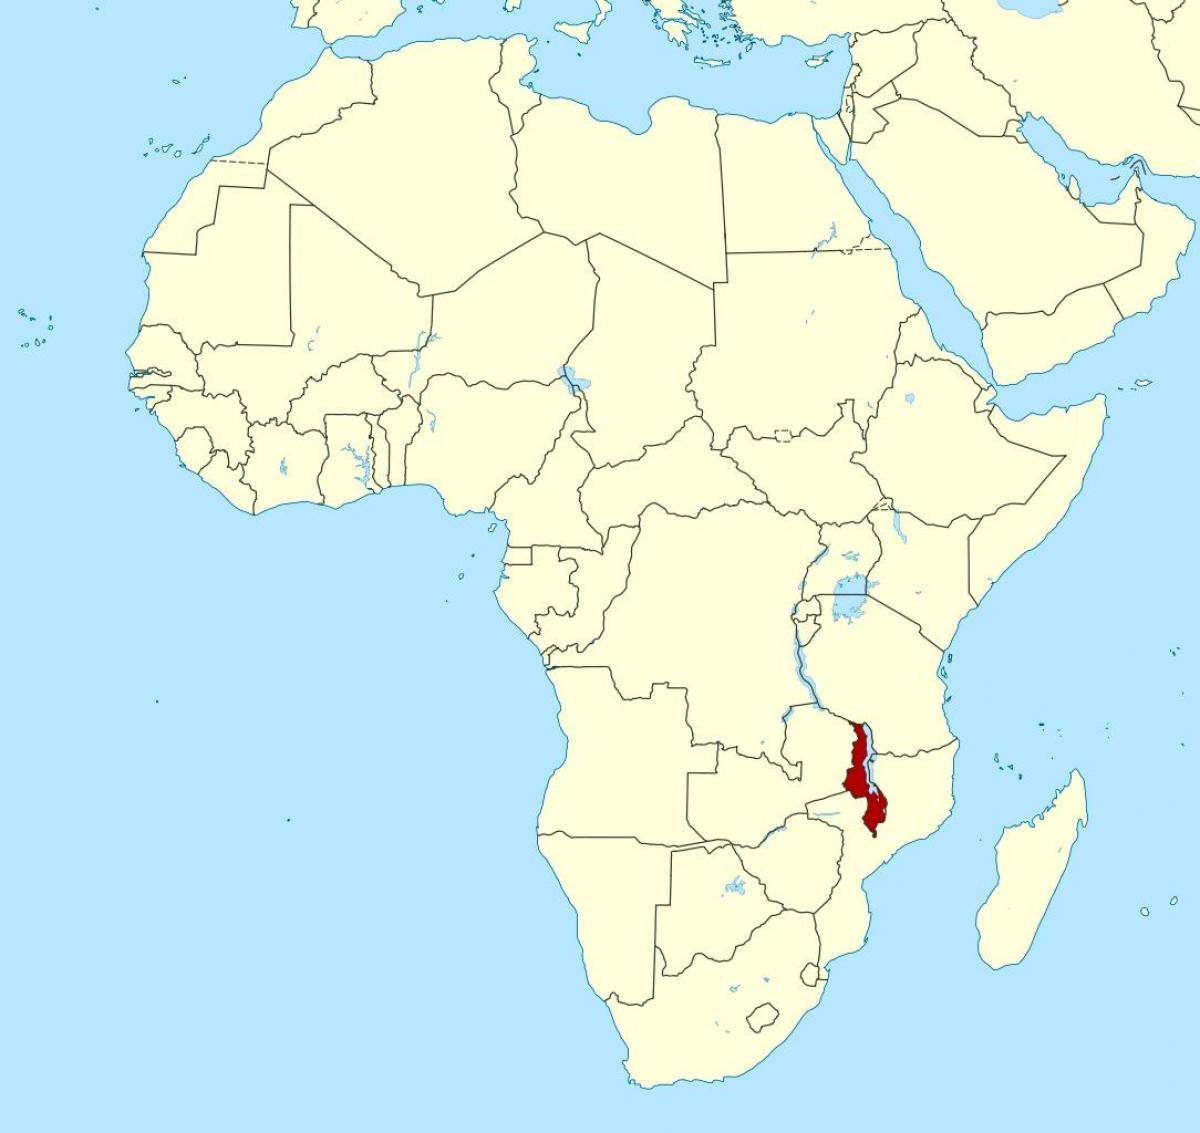 Malawi sijainti maailman kartalla